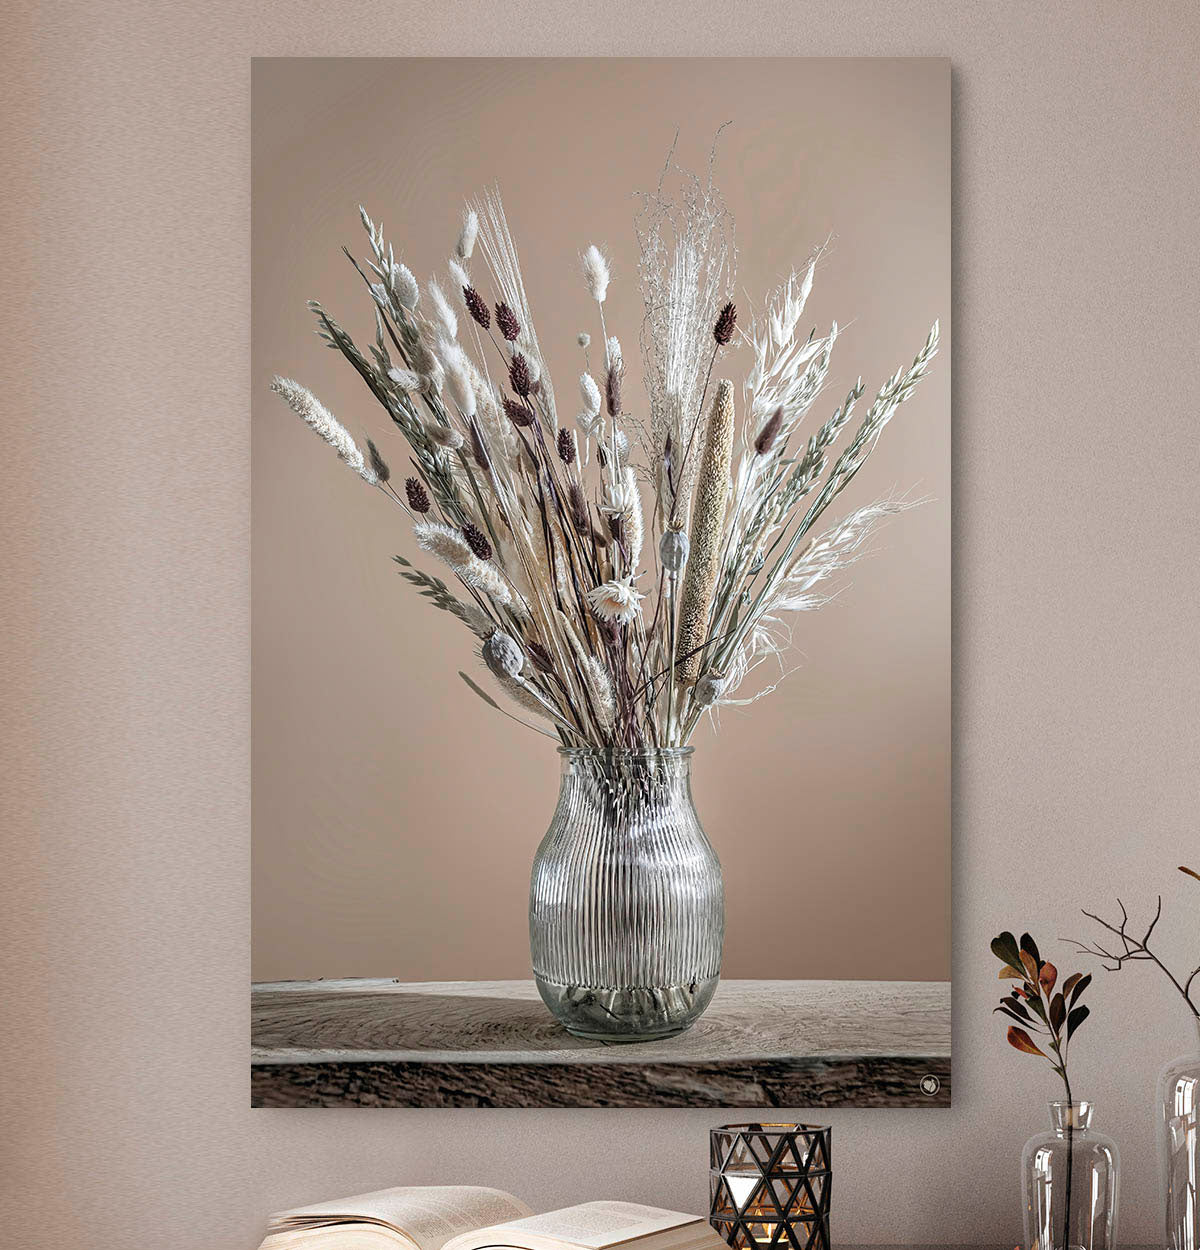 Wanddecoratie met witte en bruine droogbloemen in een glazen vaas tegen een beige muur